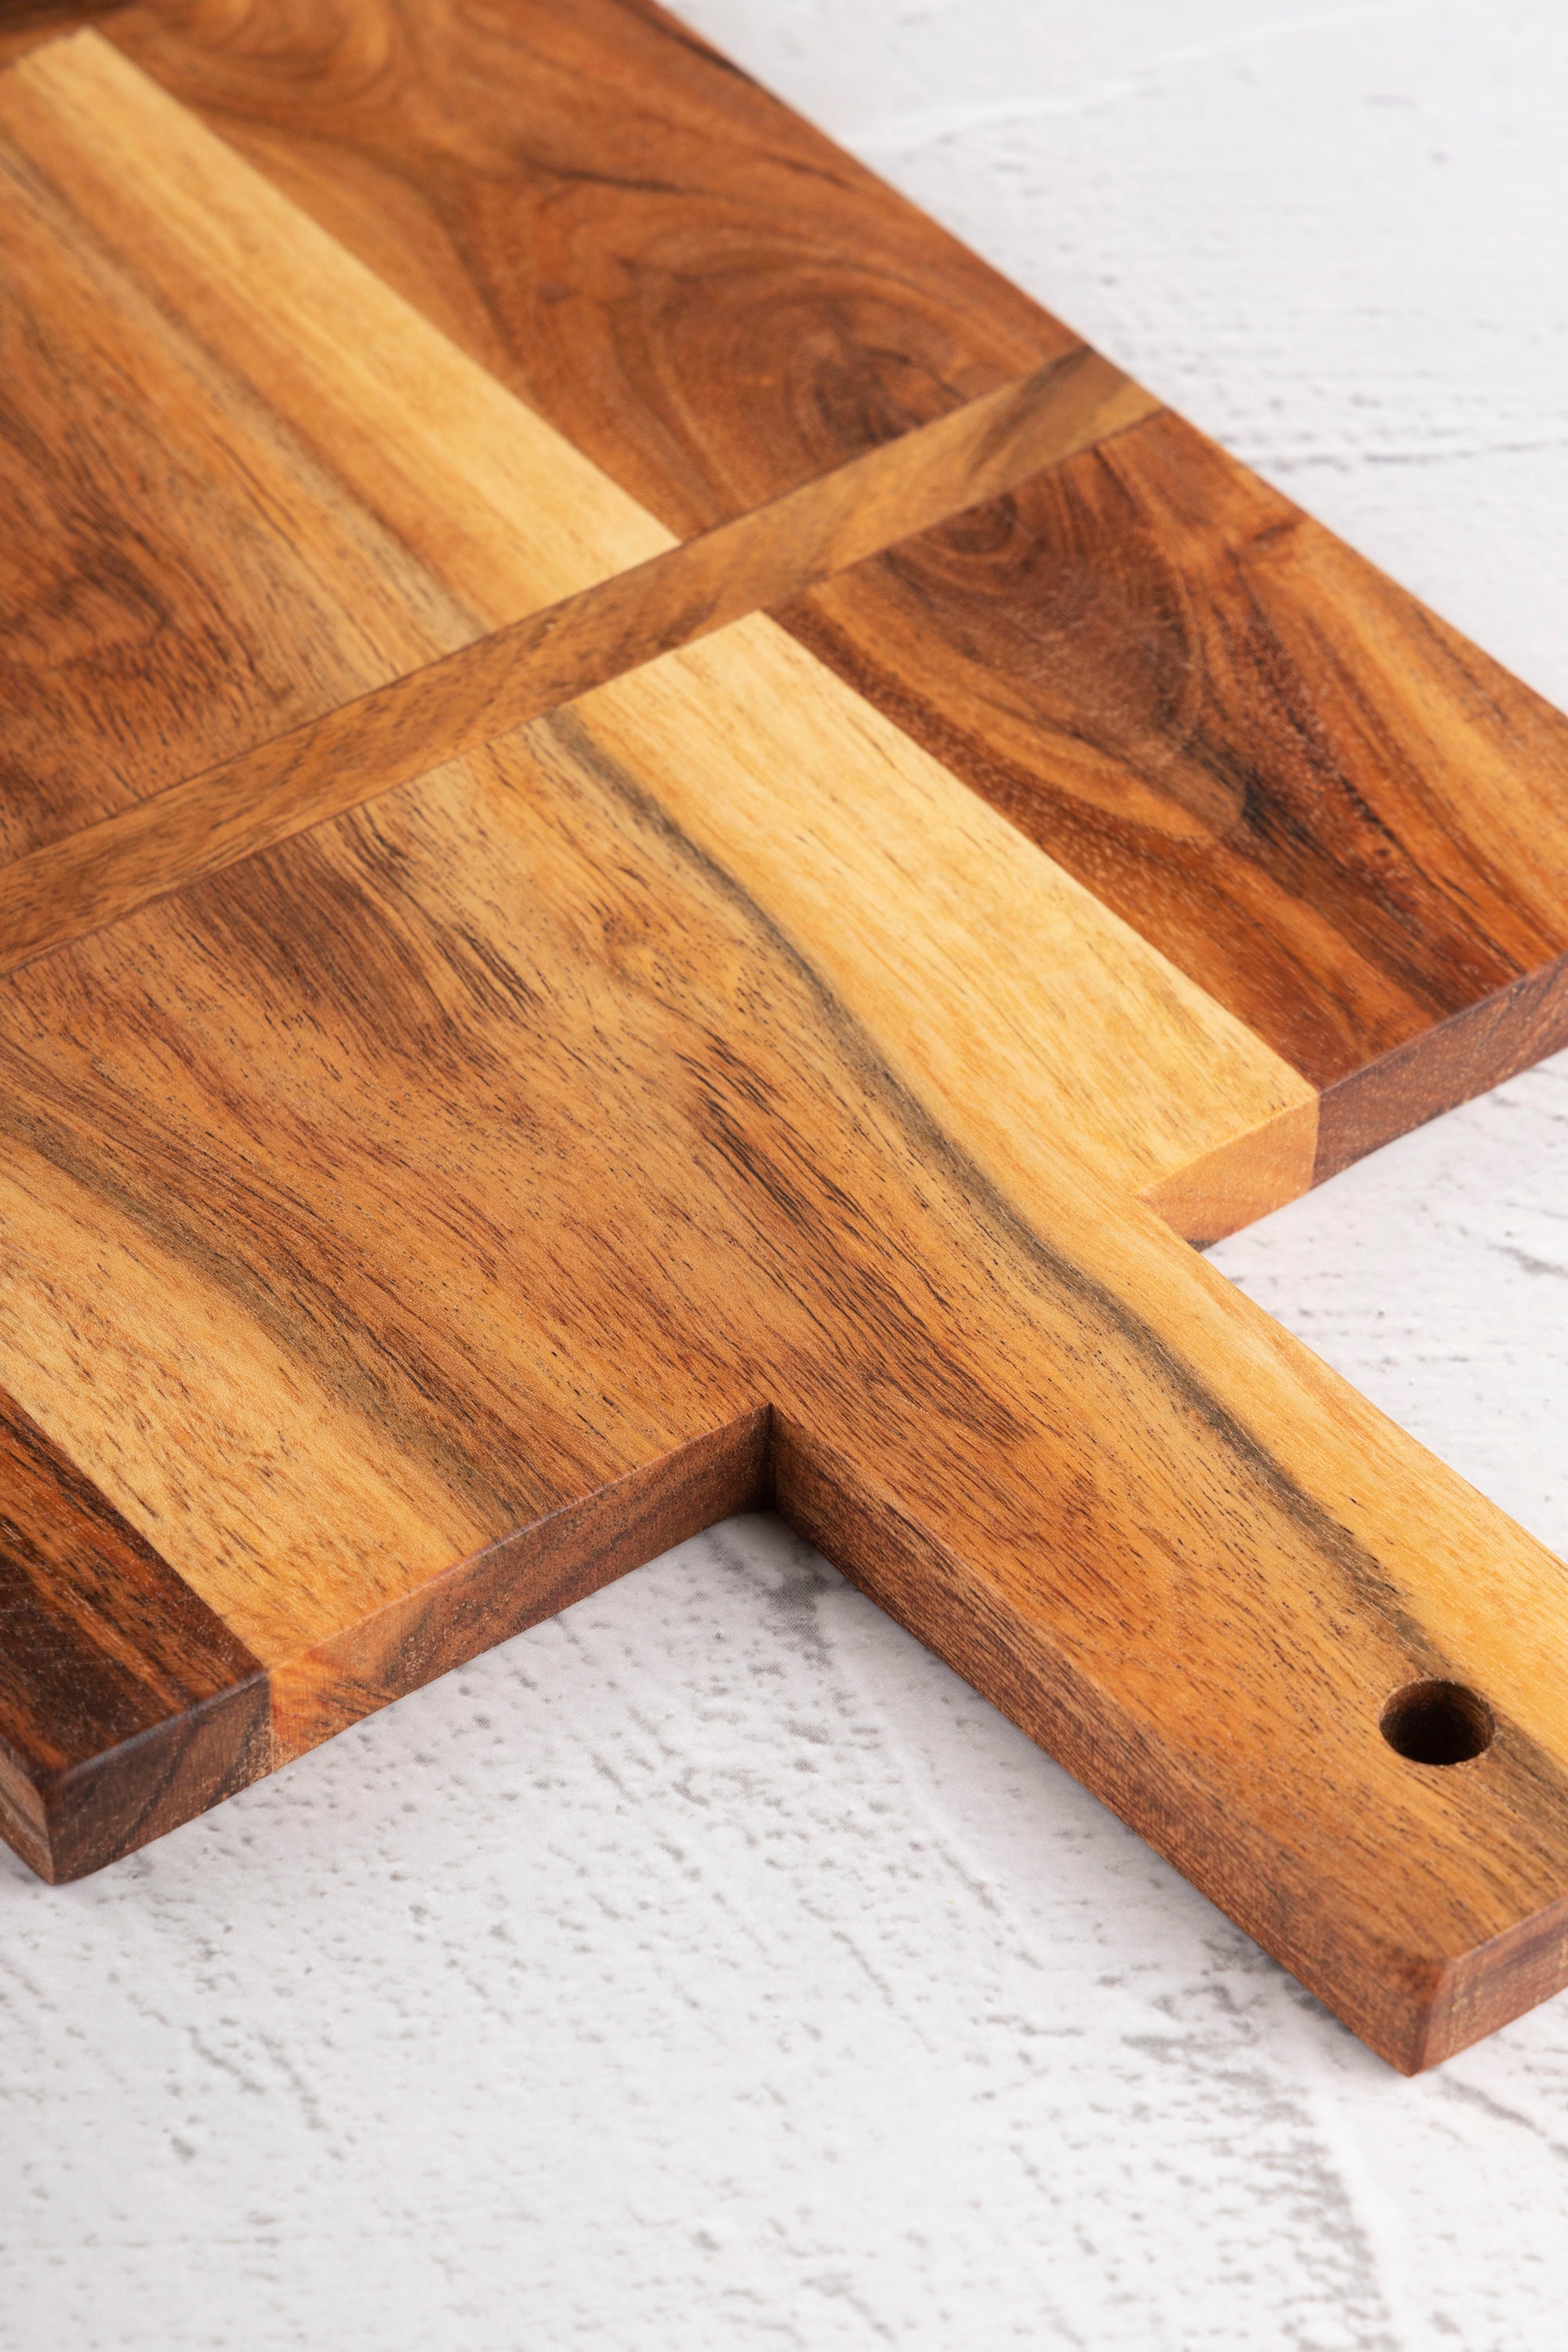 acacia wood serving board